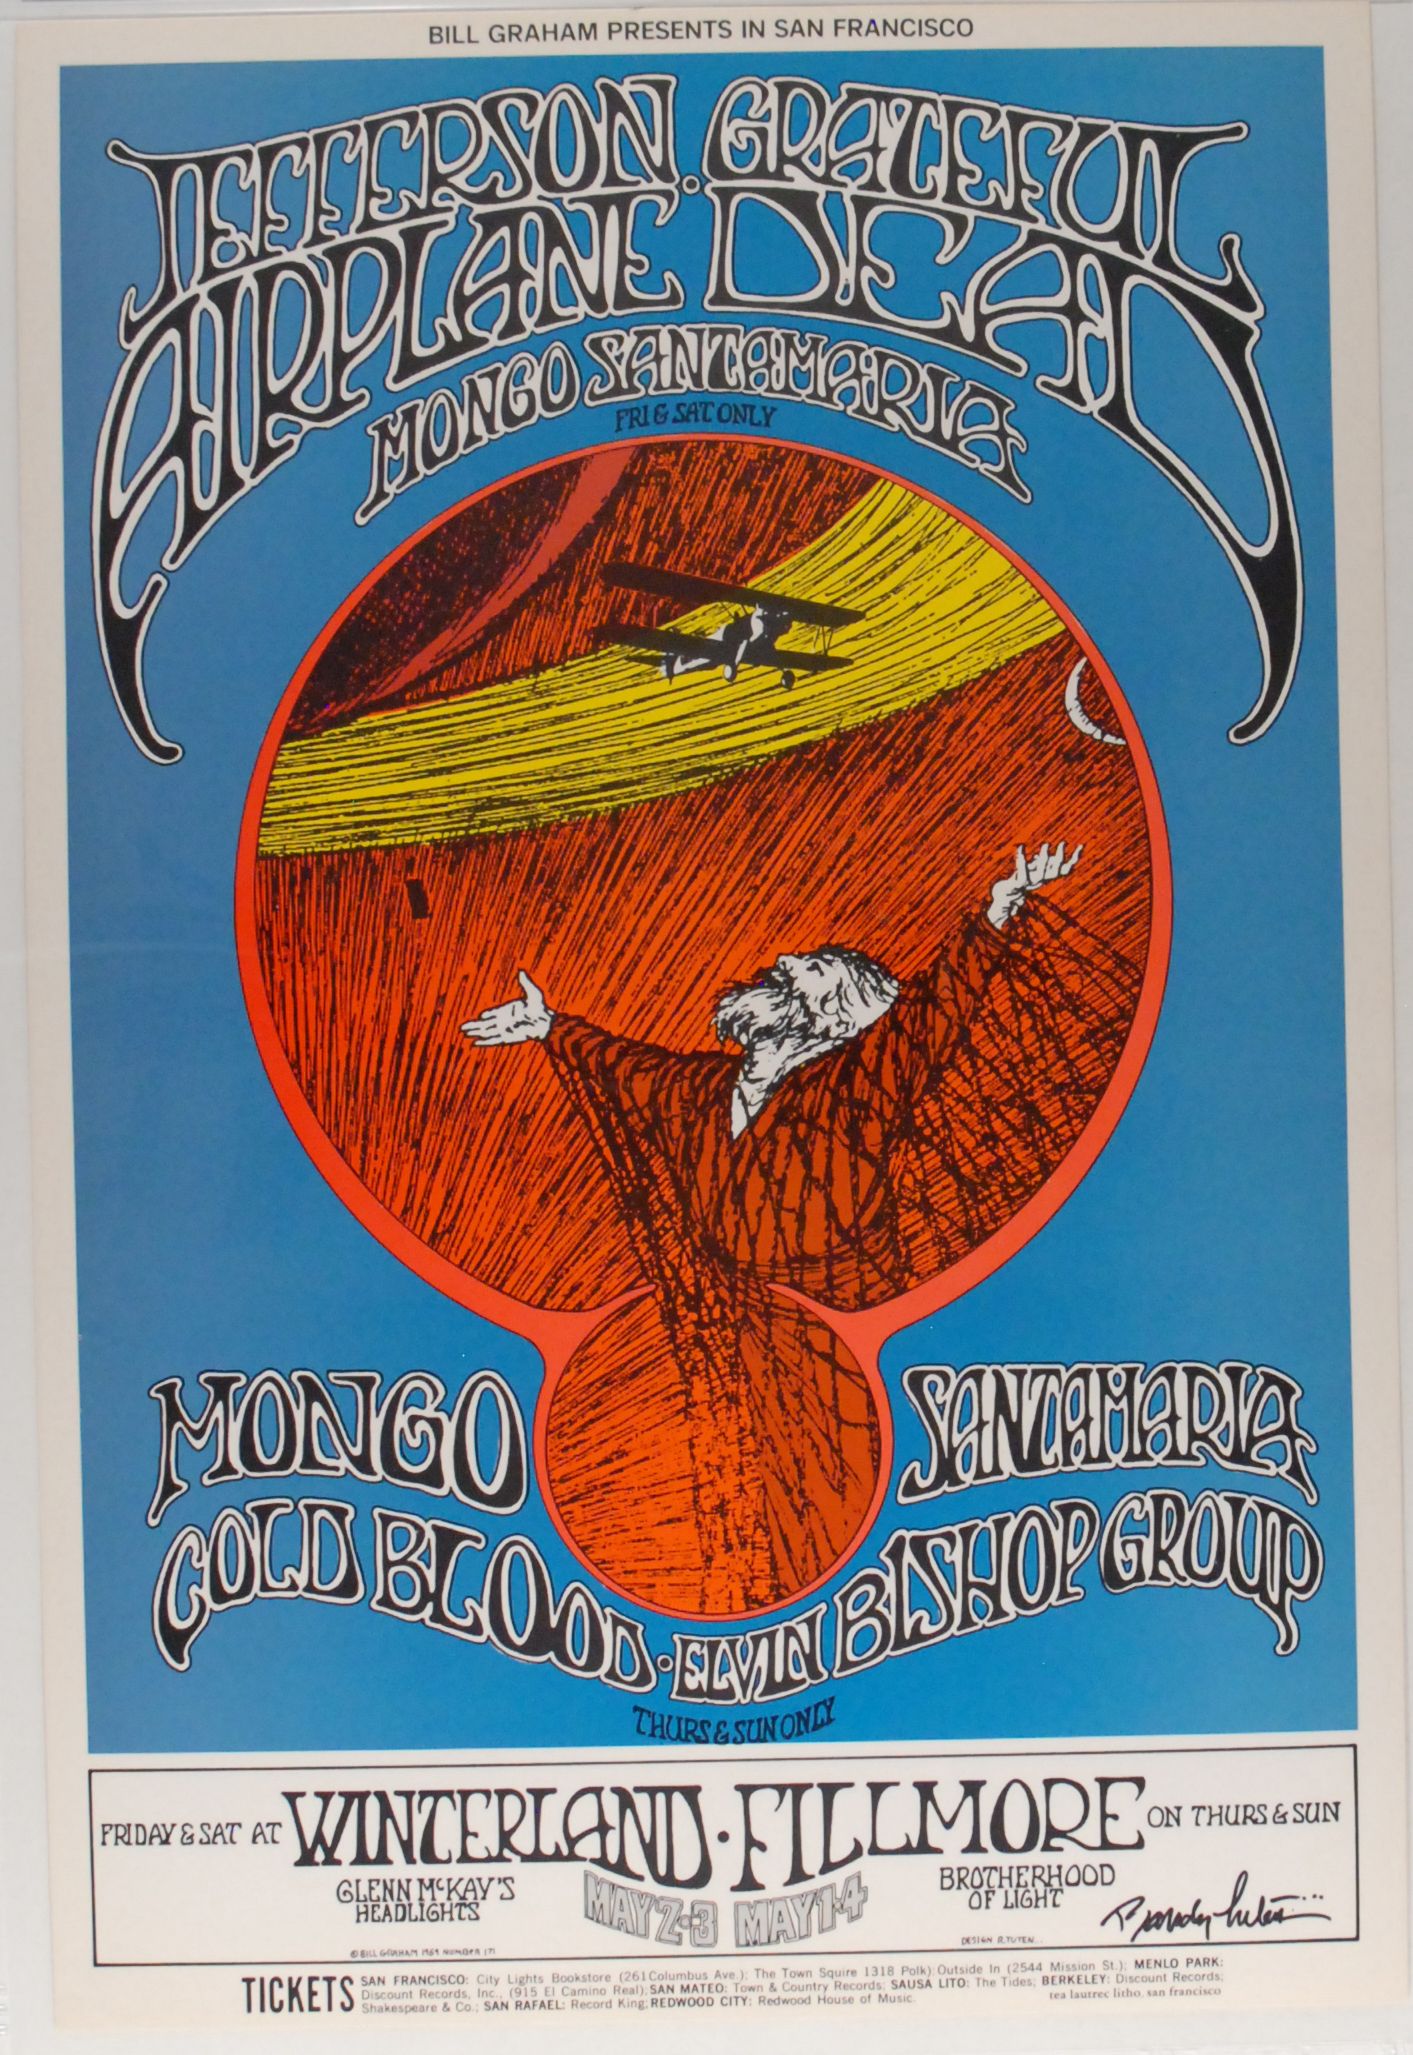 BG-171-OP-1 Concert Poster